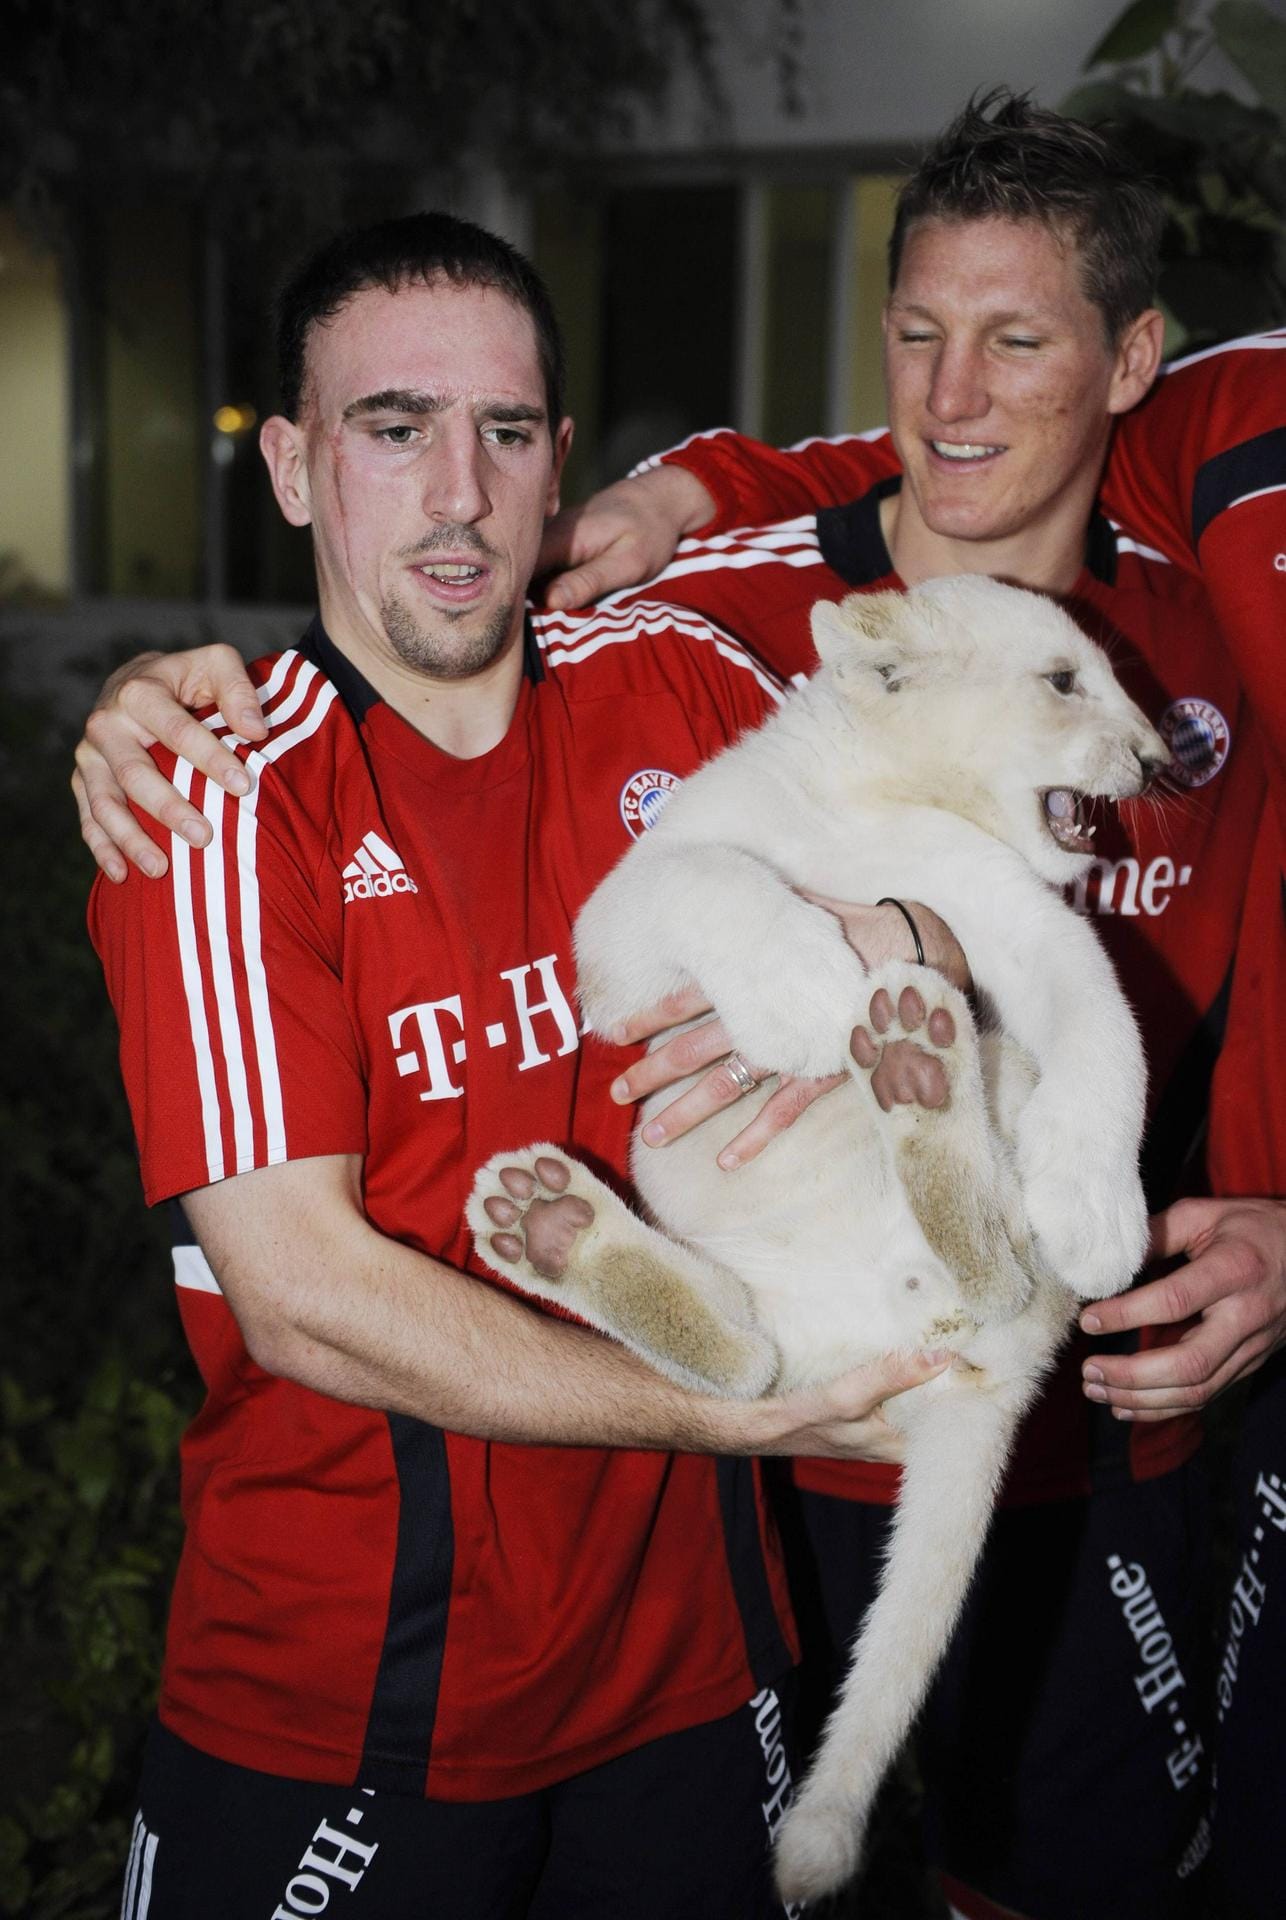 Unwohl ist vielleicht auch das richtige Wort für dieses Bild. Wer hat mehr Angst: Frank Ribery oder das Löwenbaby?